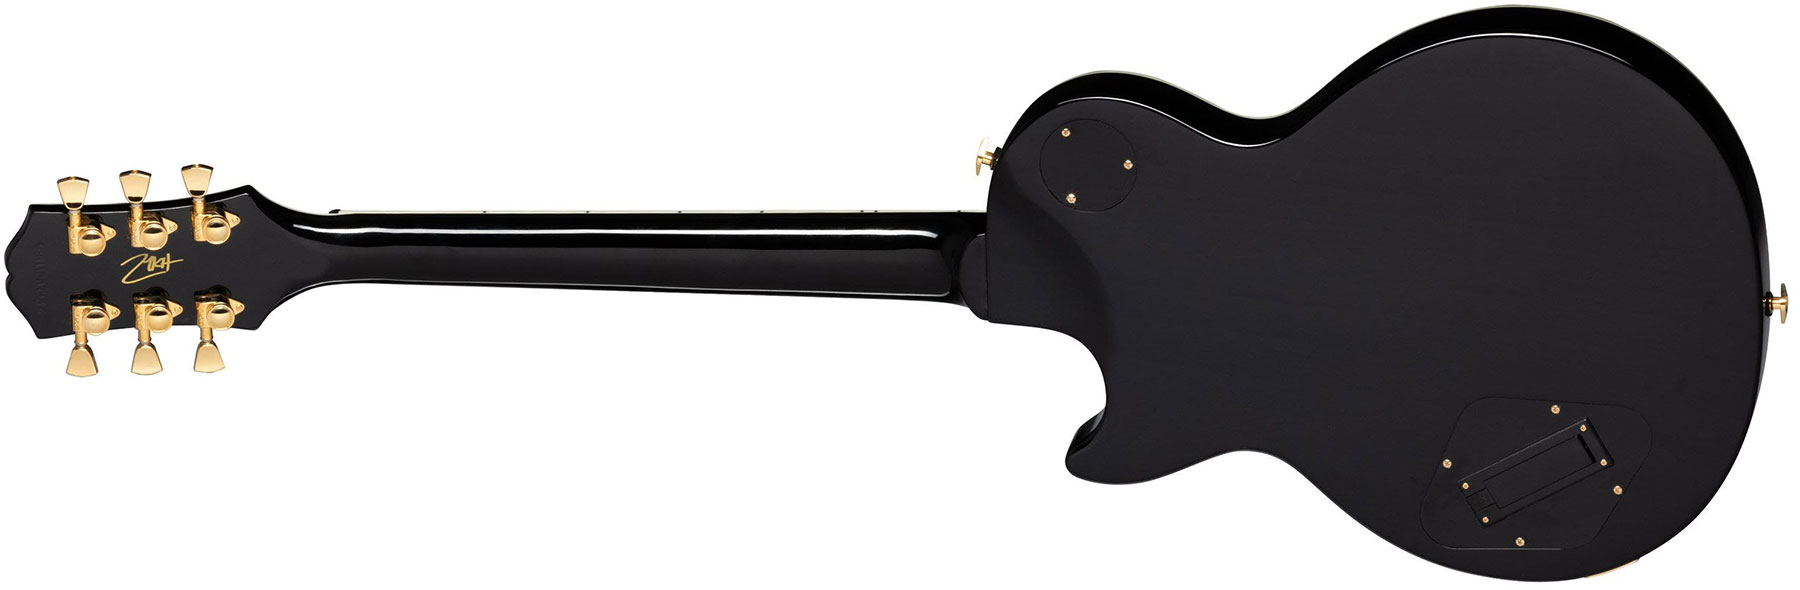 Epiphone Matt Heafy Les Paul Custom Origins Signature 2h Fishman Fluence Custom Ht Eb - Ebony - Single cut electric guitar - Variation 1